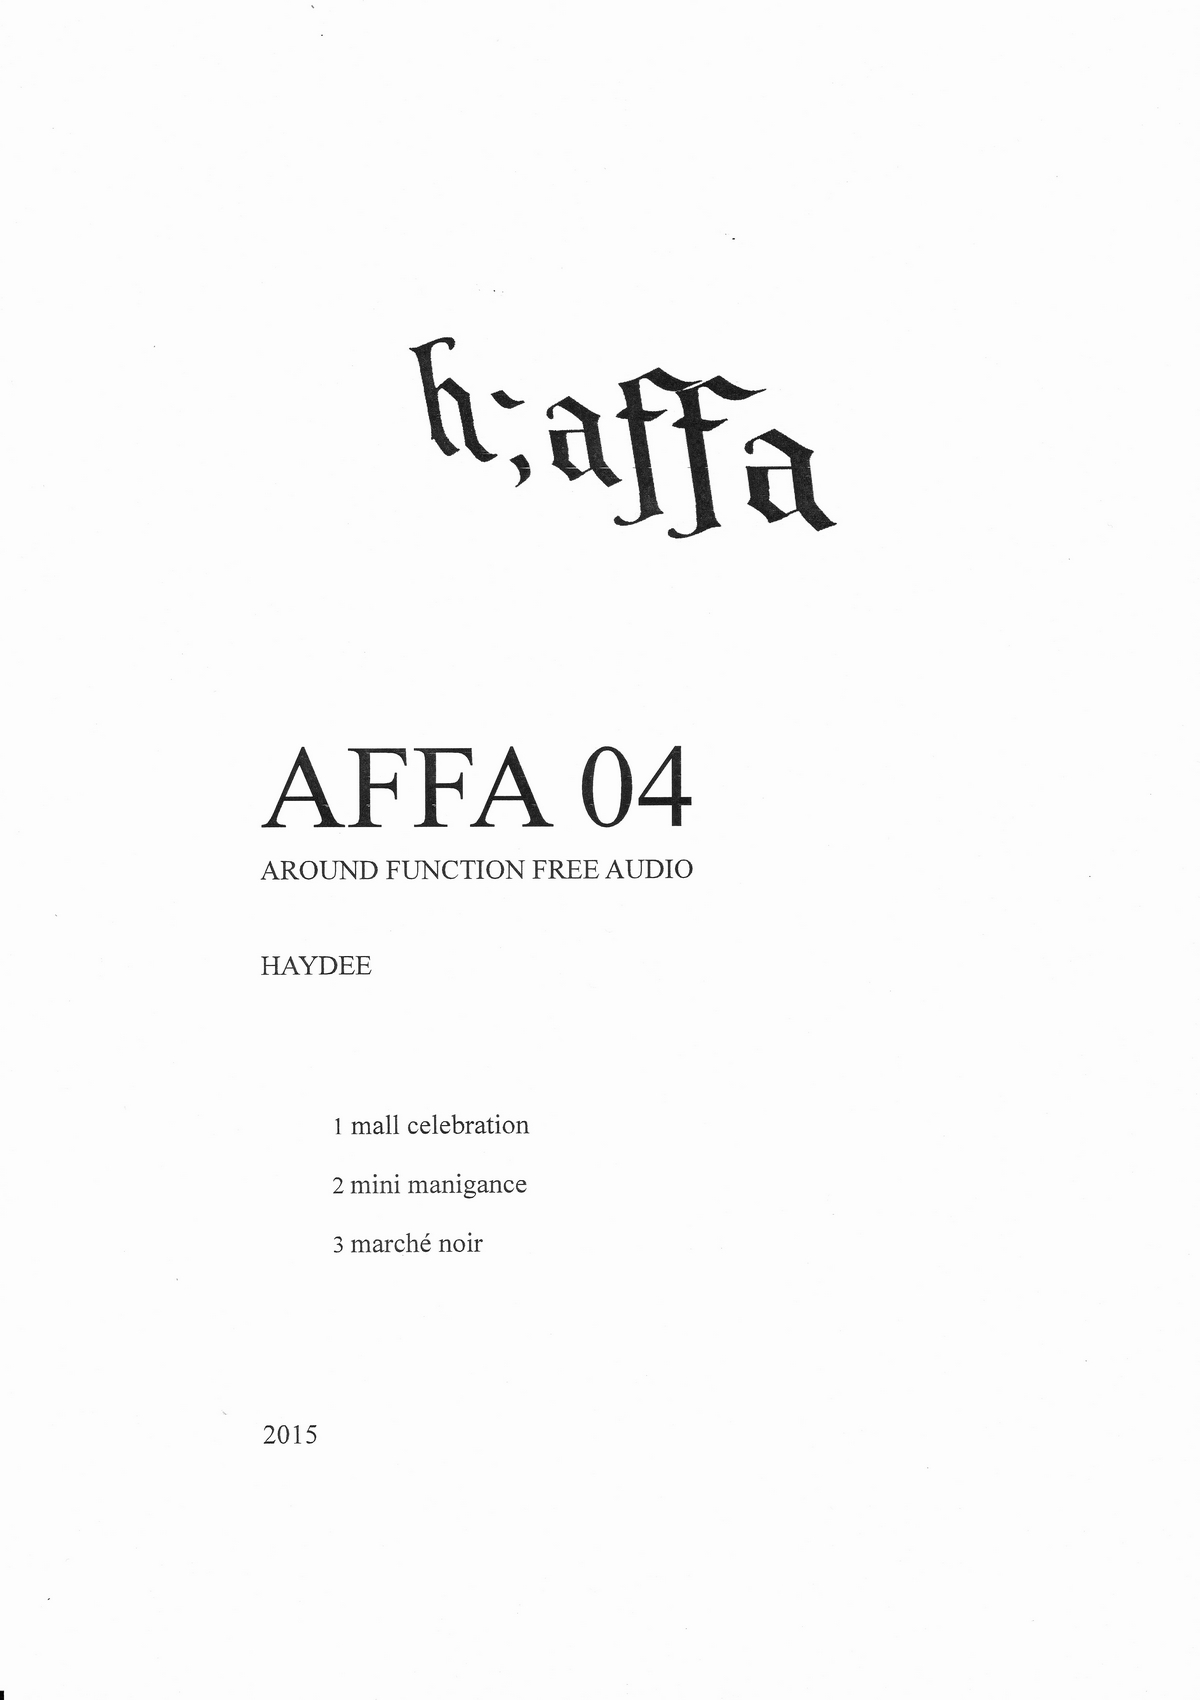 AFFA04